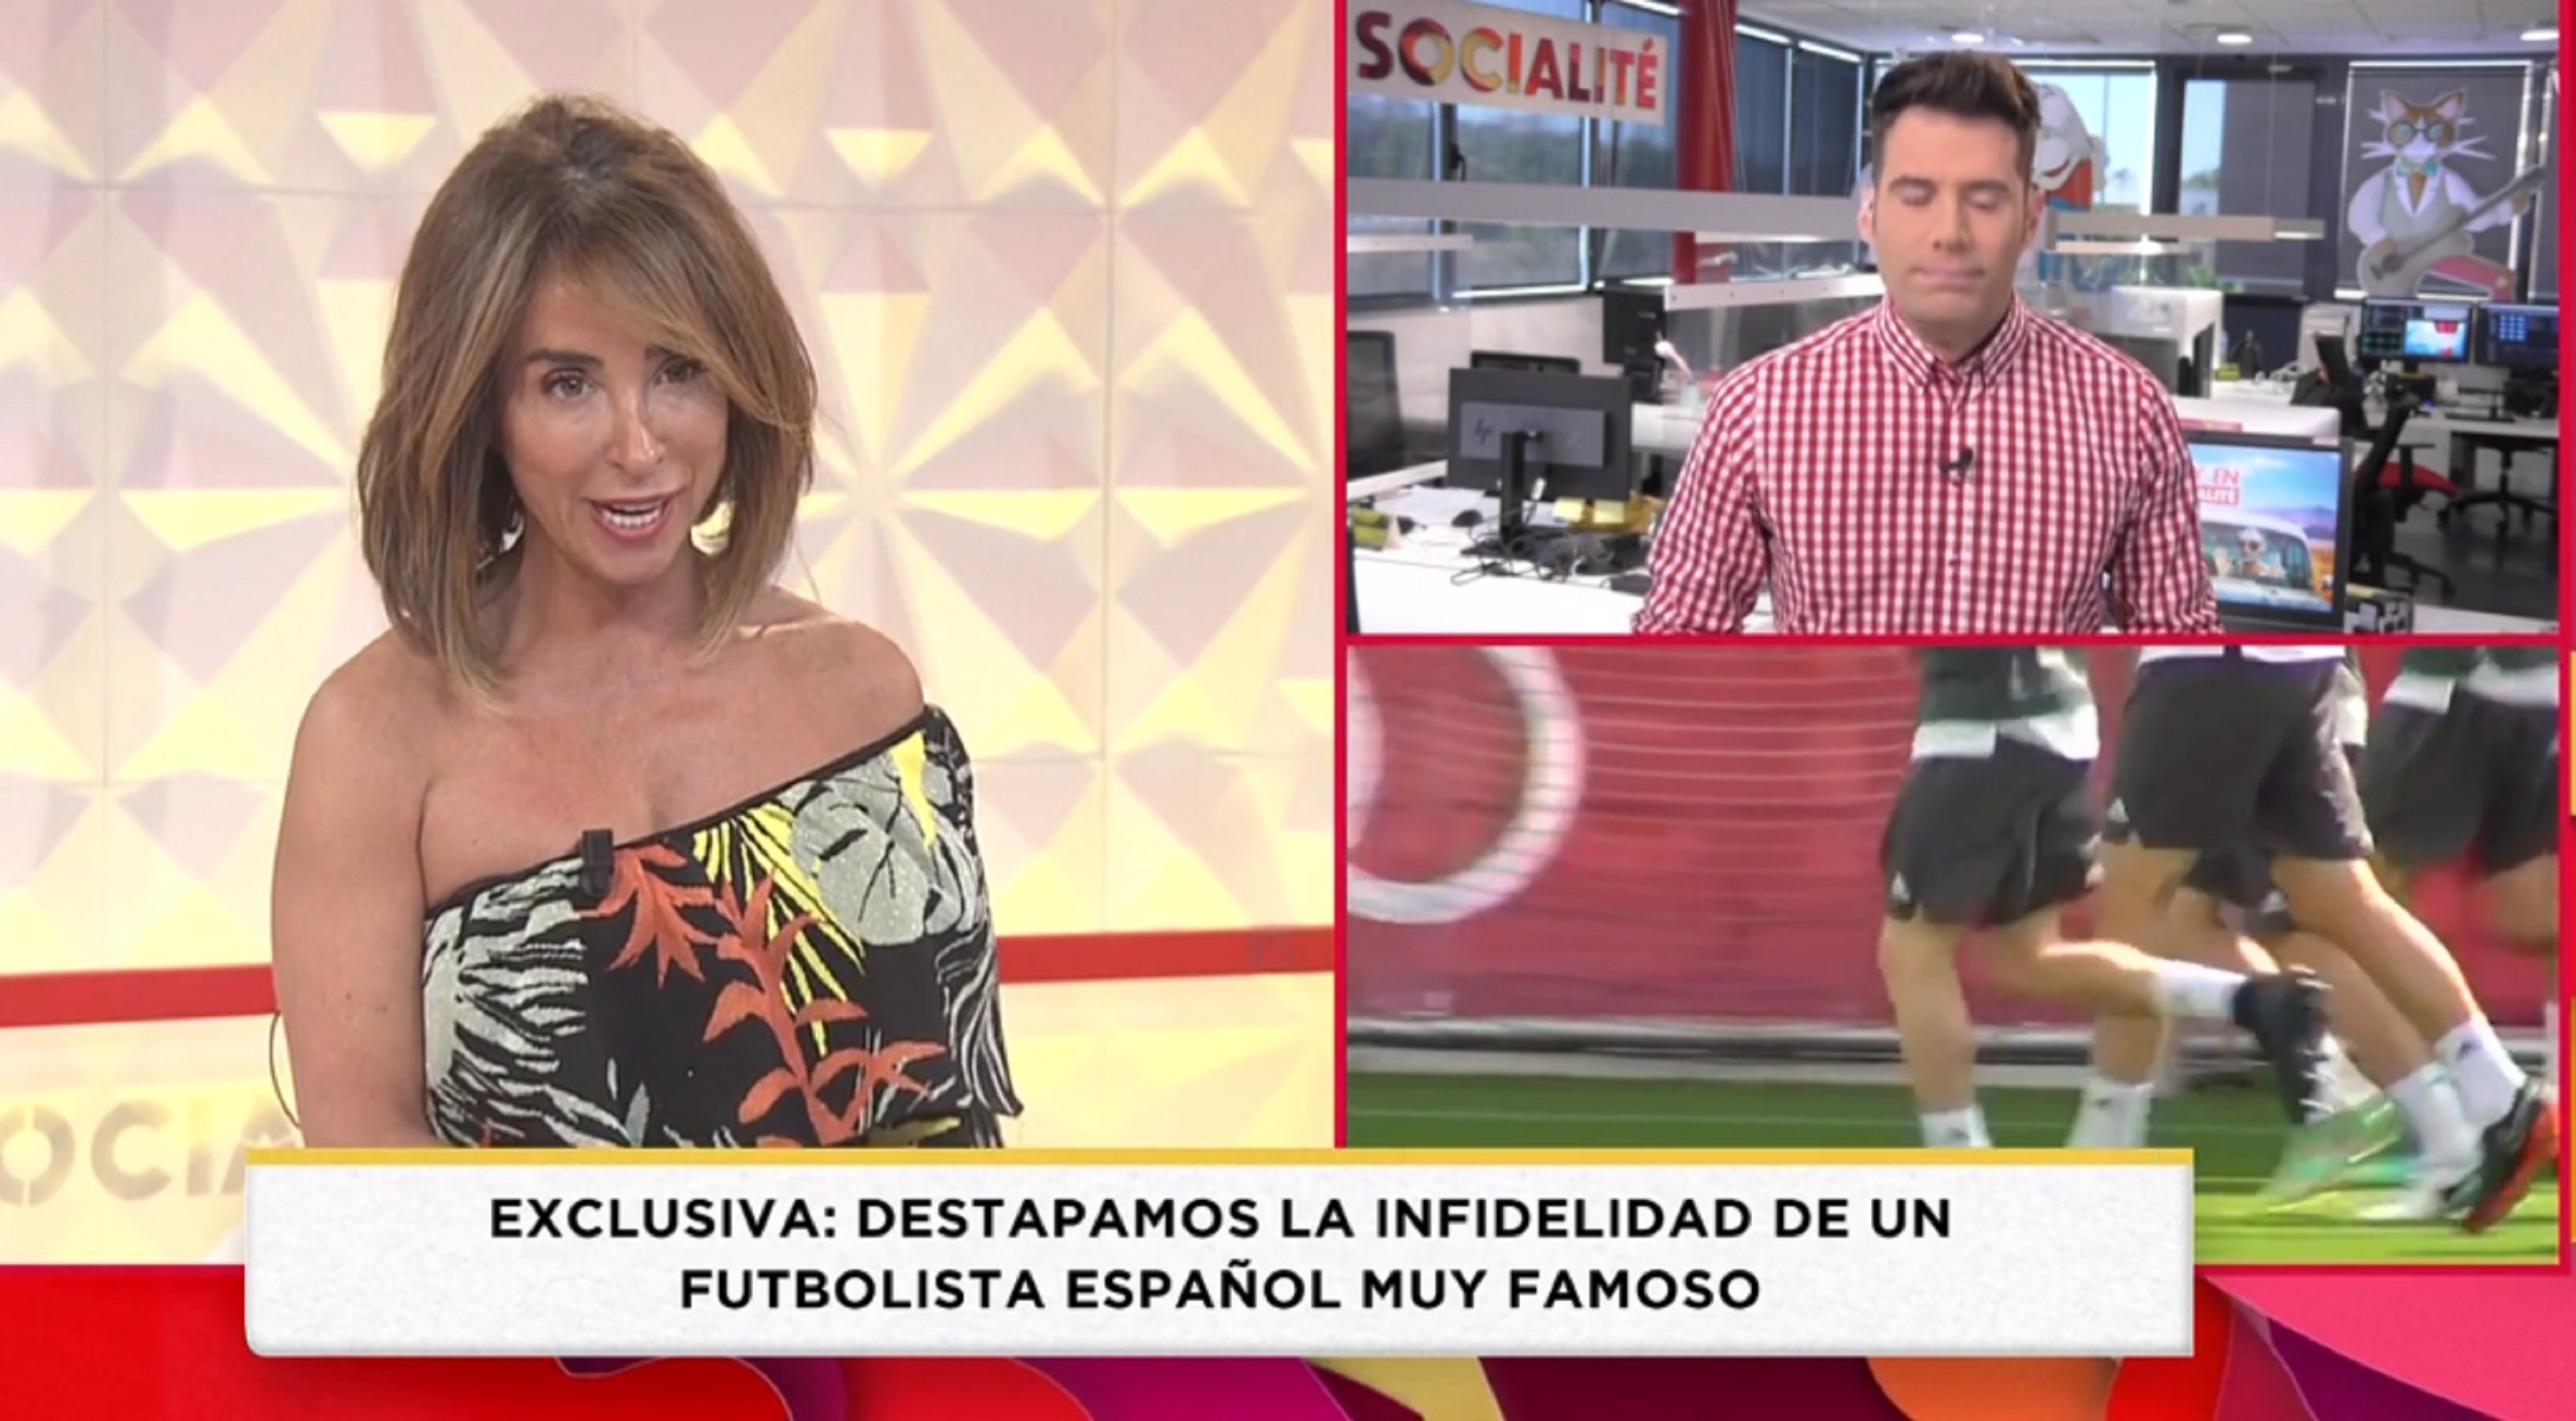 Campaña contra Telecinco por la exclusiva del futbolista famoso infiel